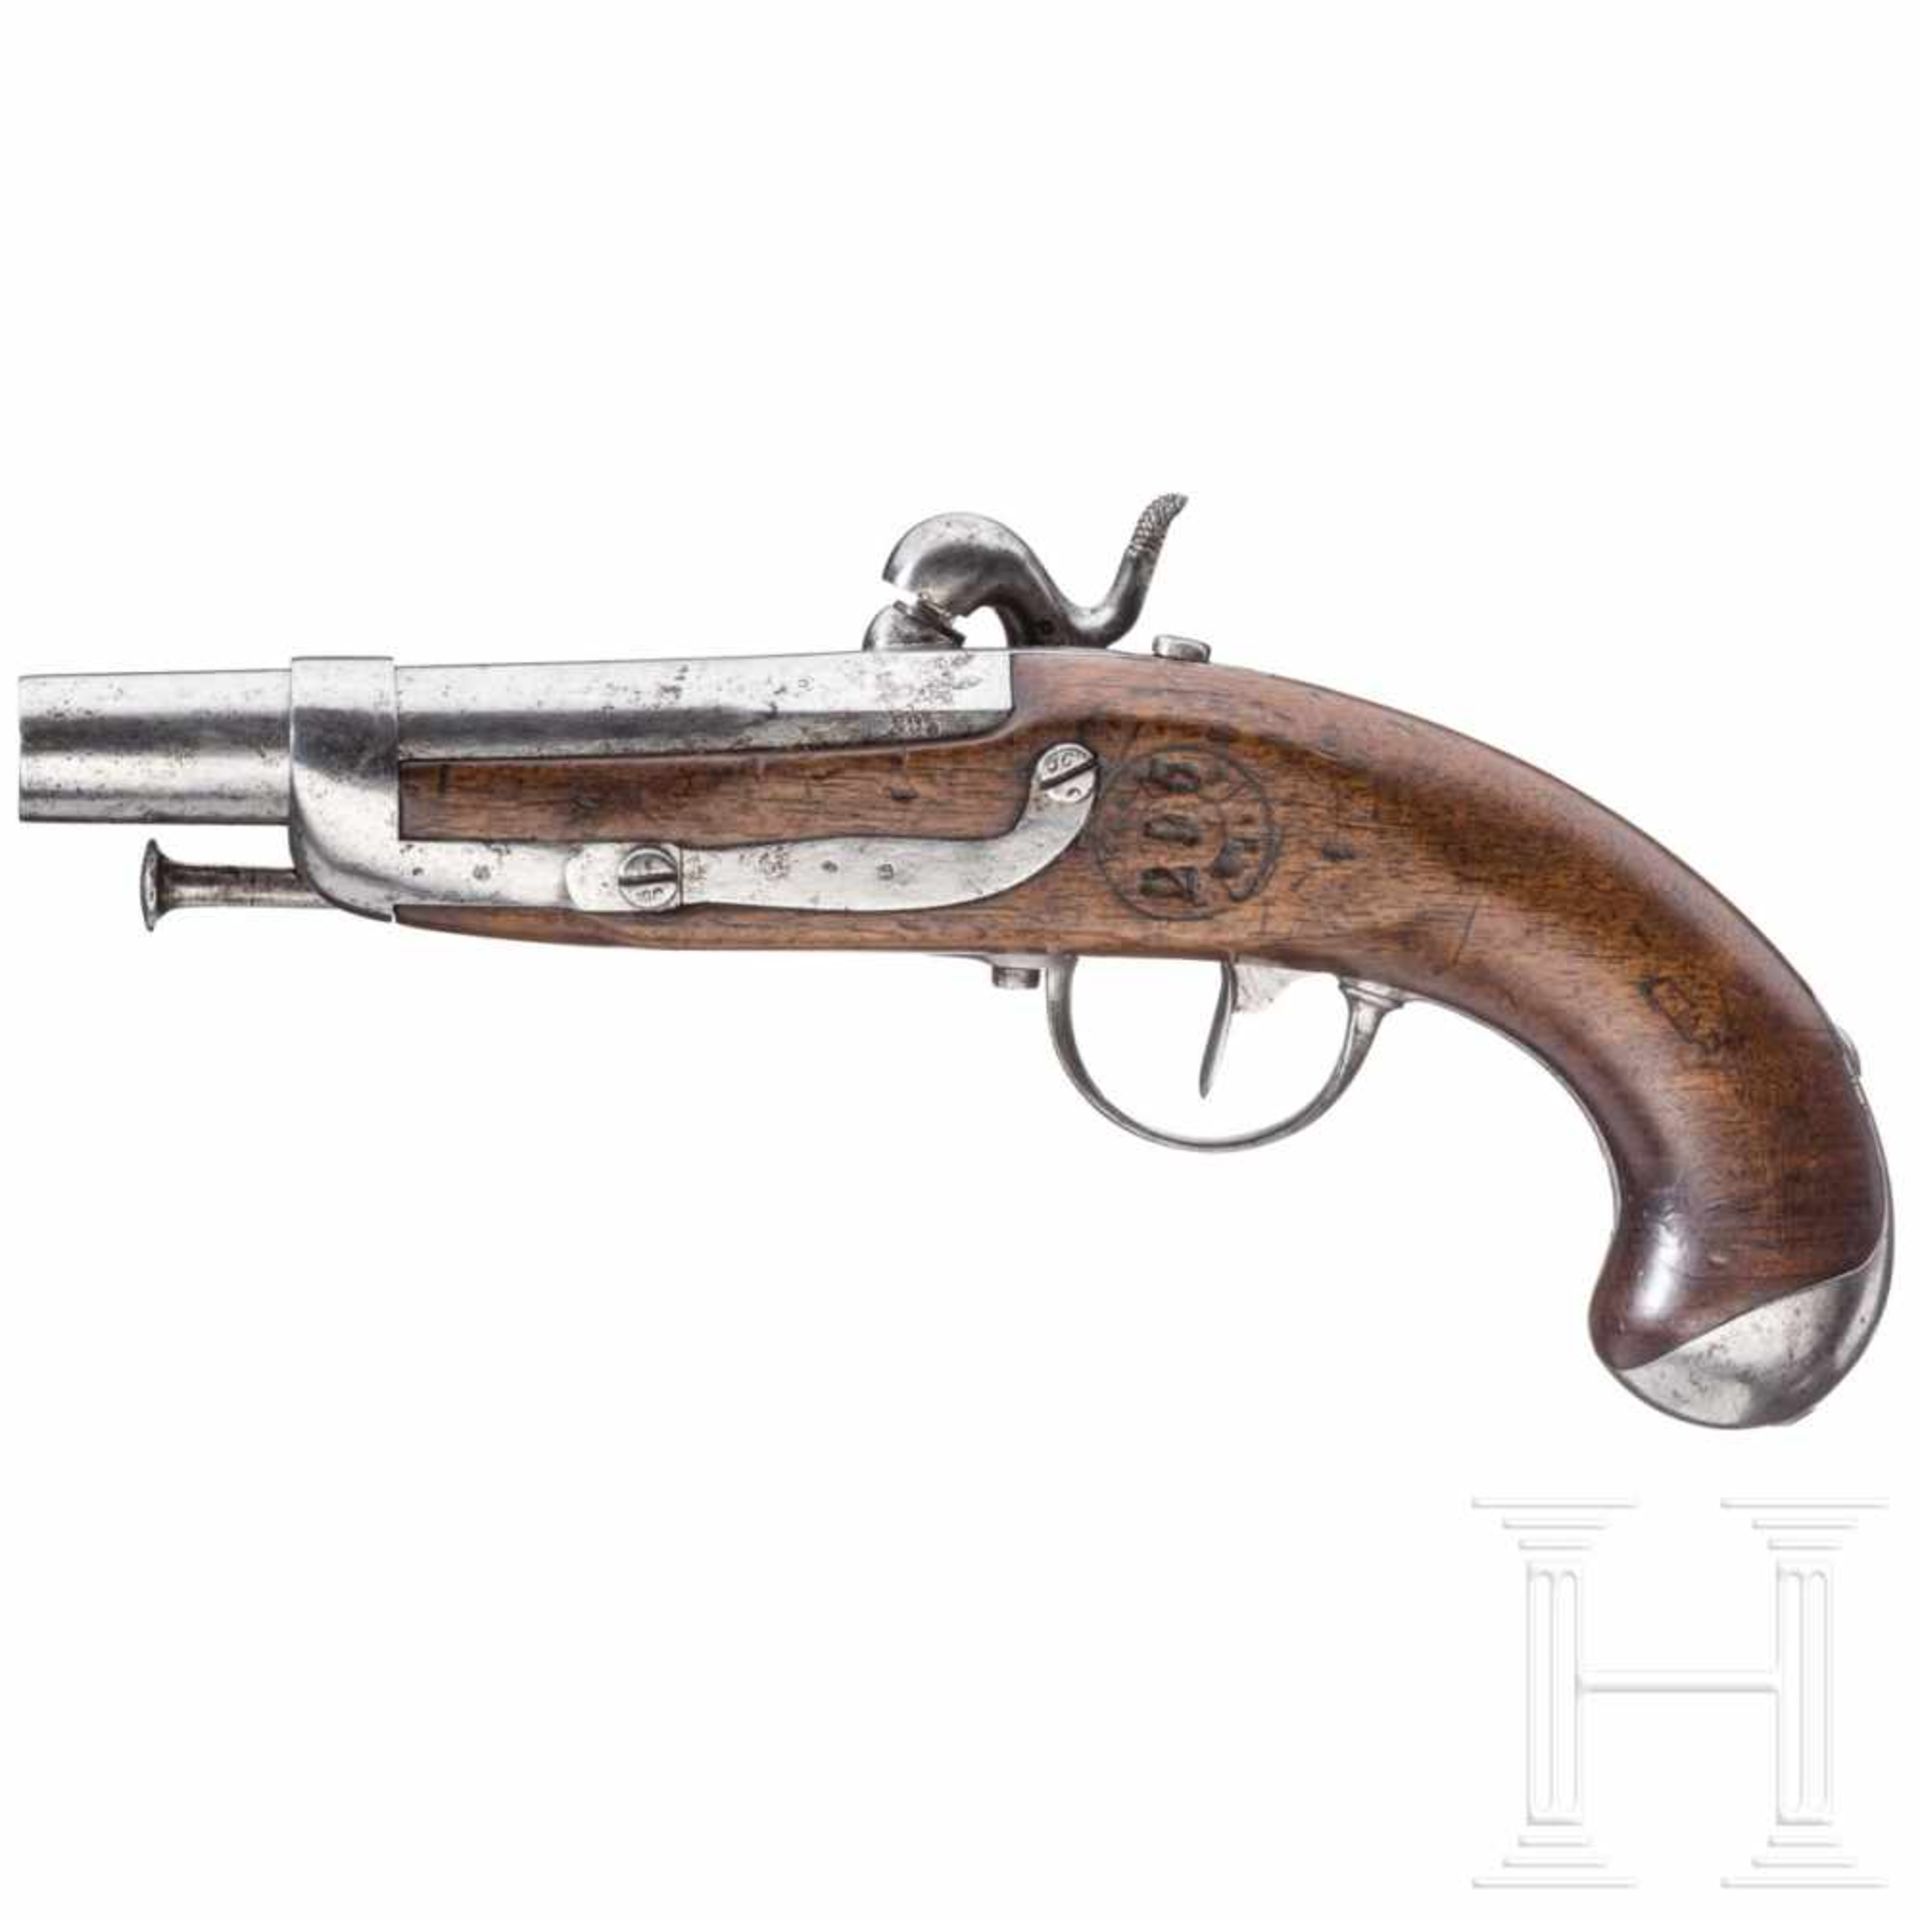 A pistol M 1822 T for gendarmsGlatter Lauf im Kaliber 15,5 mm, über der Kammer mehrfach gestempelt - Bild 2 aus 2